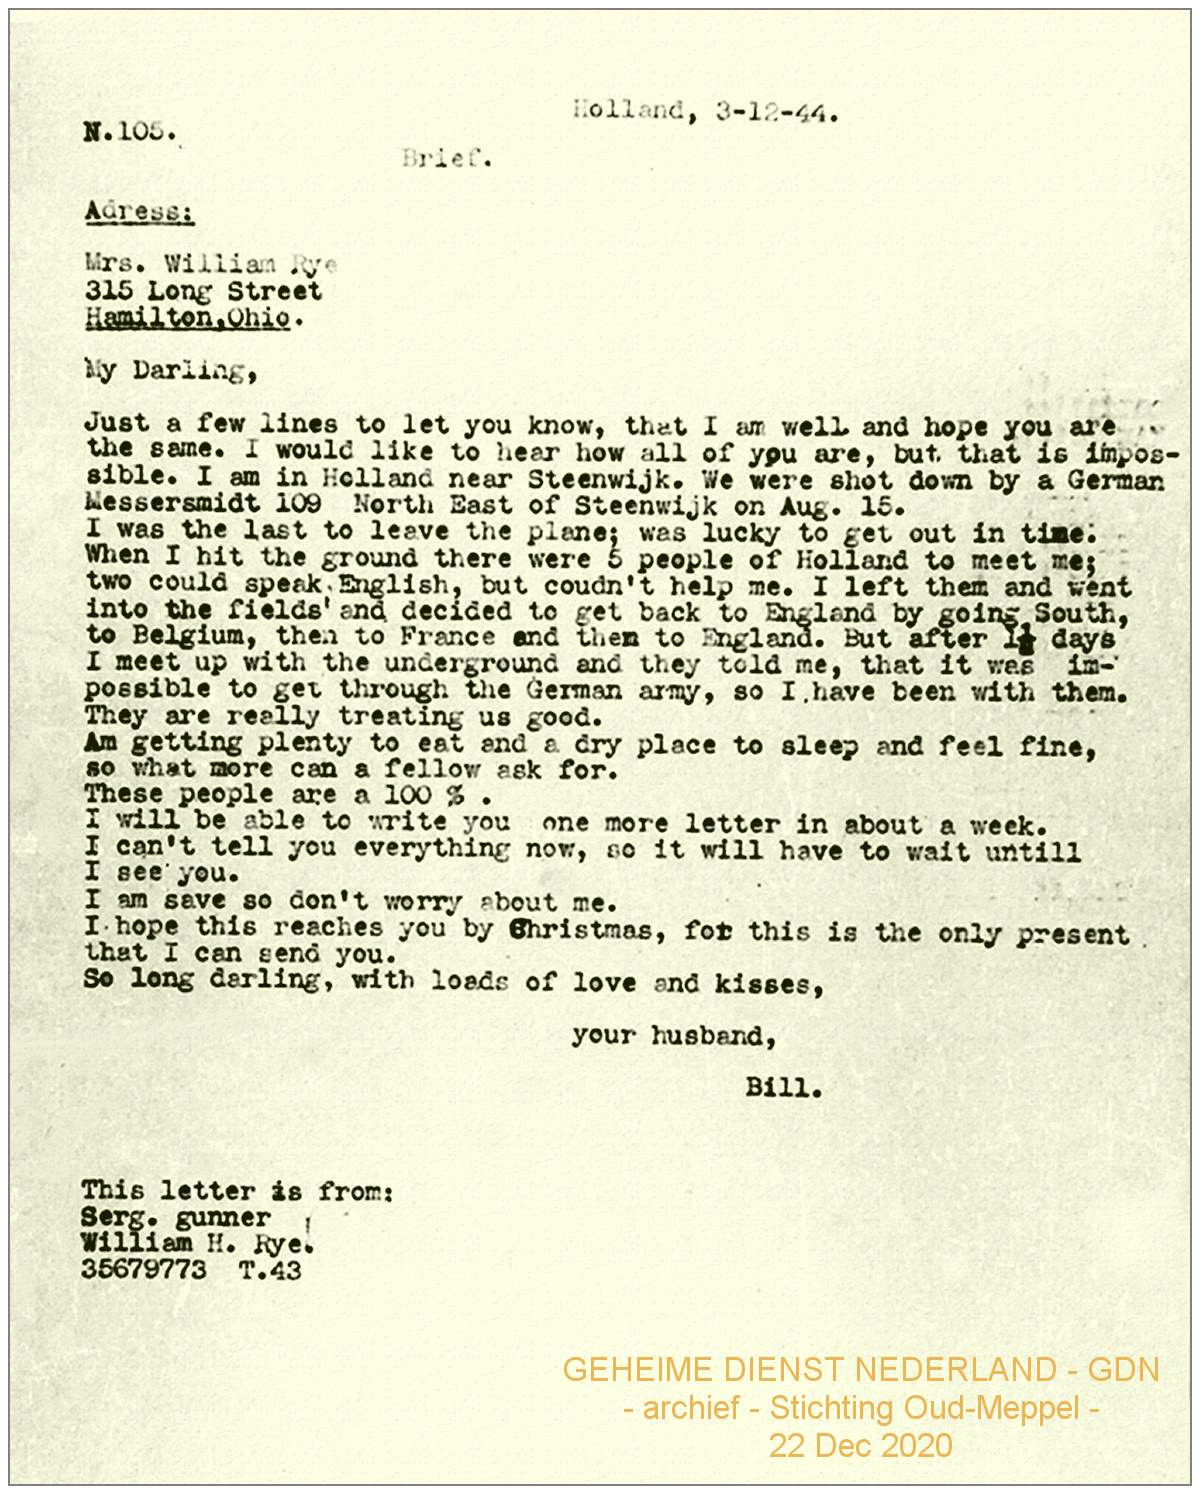 GDN - N.105 - letter 01 - Bill Rye - Holland, 03 Dec 1944